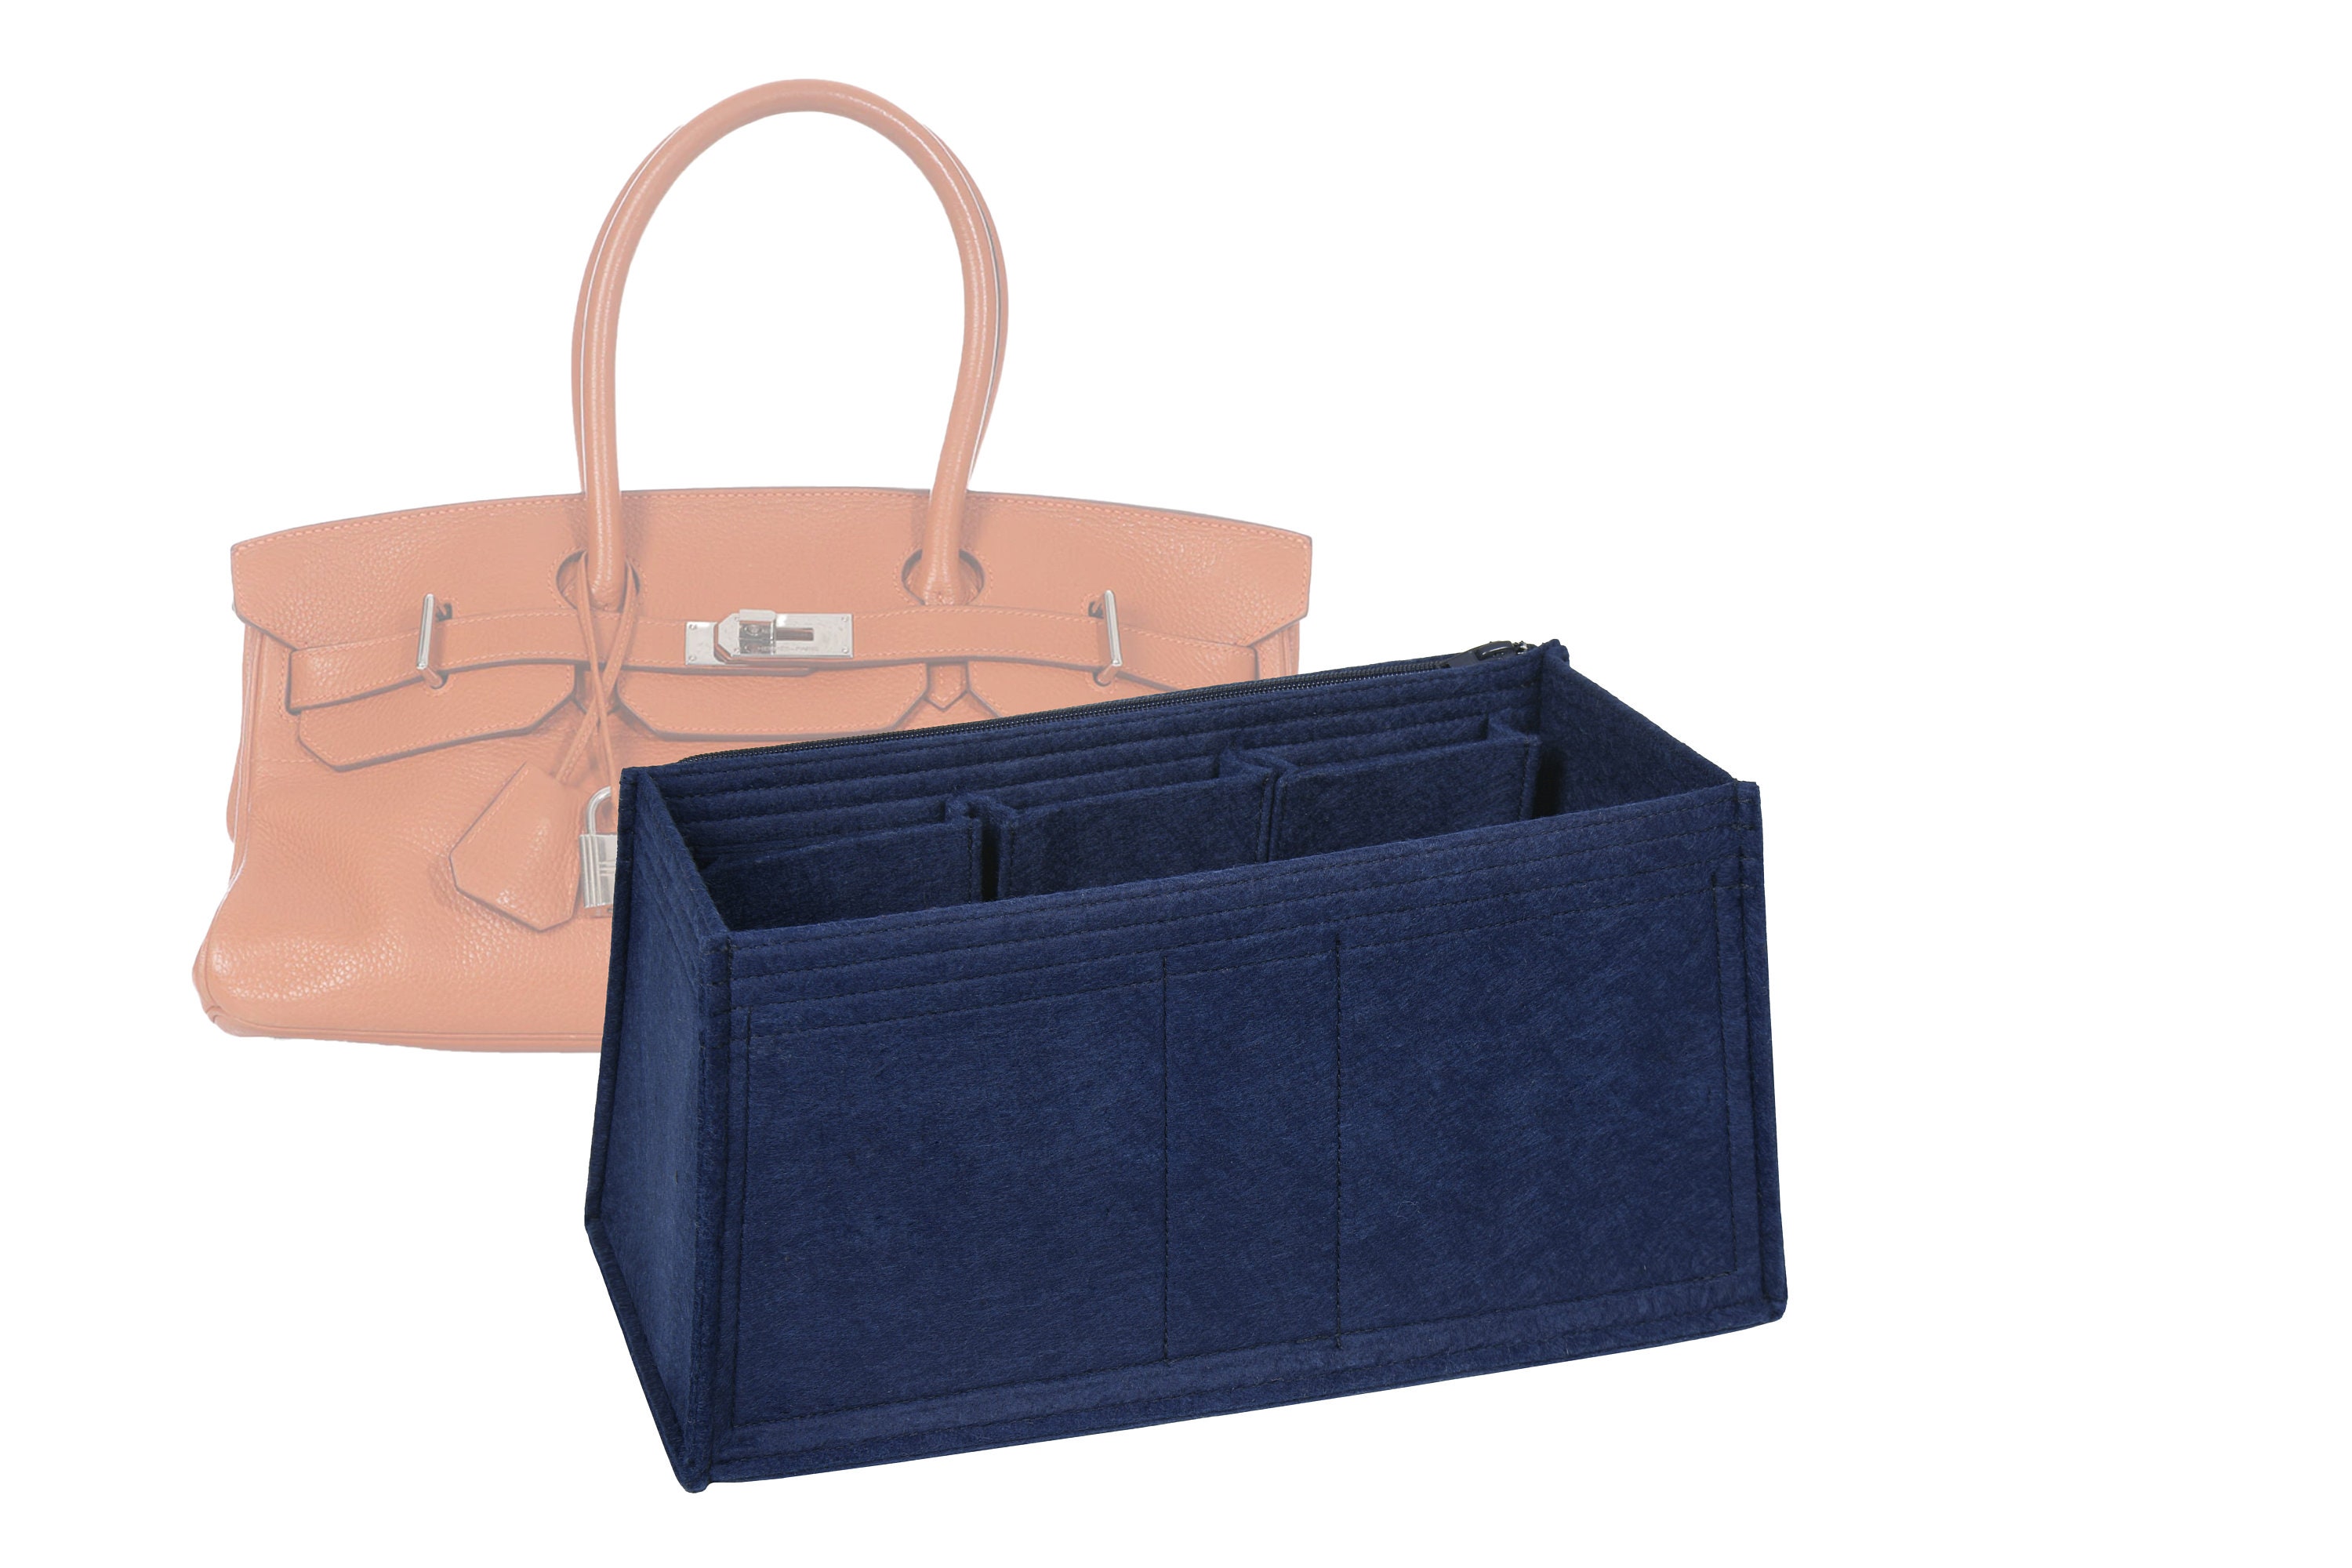 Chanel Petite Grand Shopping Tote PST GST Bag Organizer Insert Shaper, Felt Bag Organiser Liner